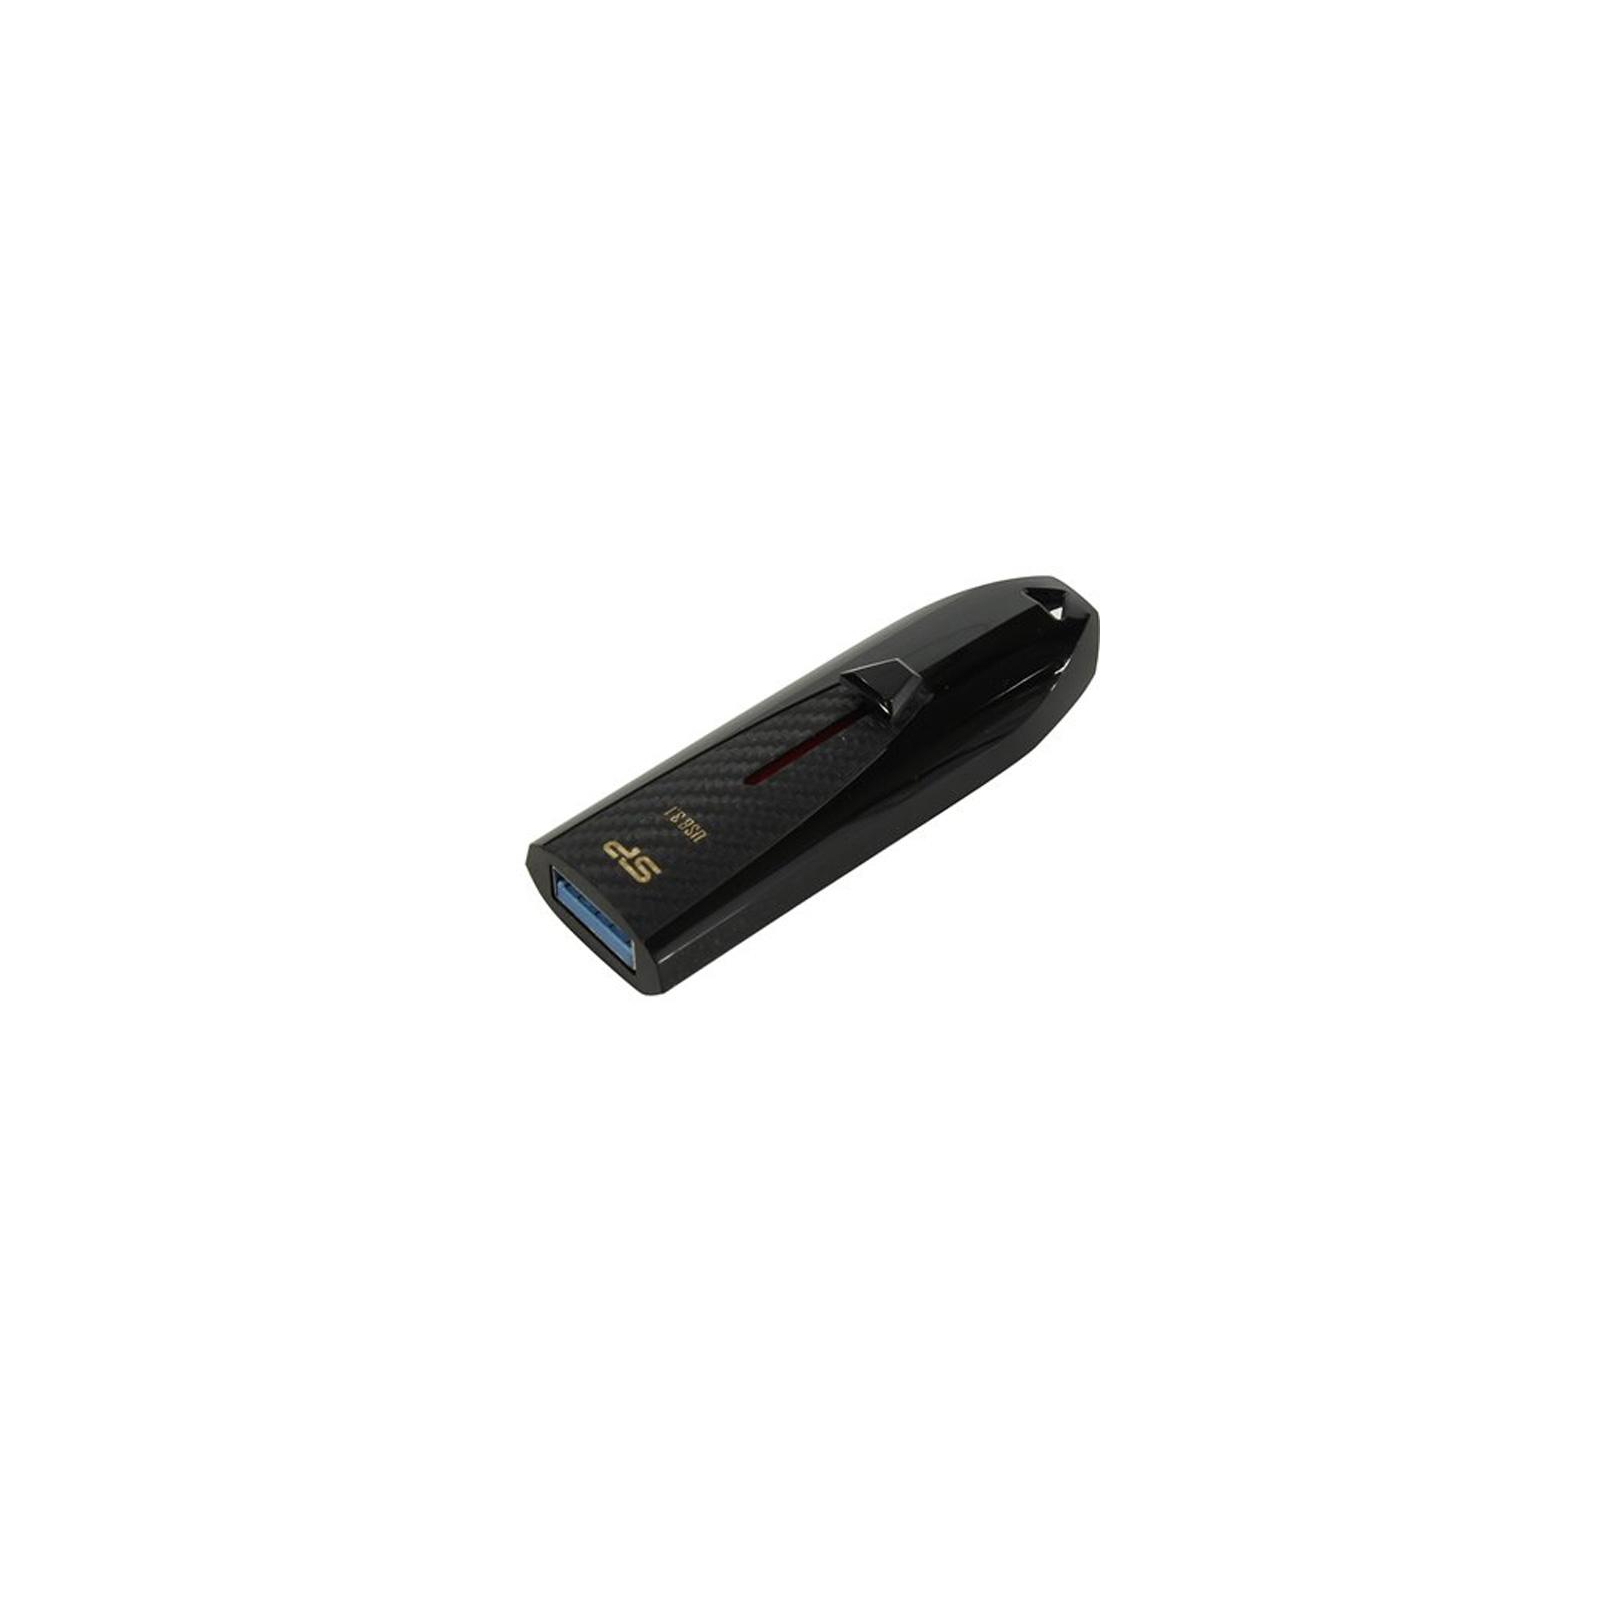 USB флеш накопичувач Silicon Power 8GB B25 Black USB 3.0 (SP008GBUF3B25V1K) зображення 2